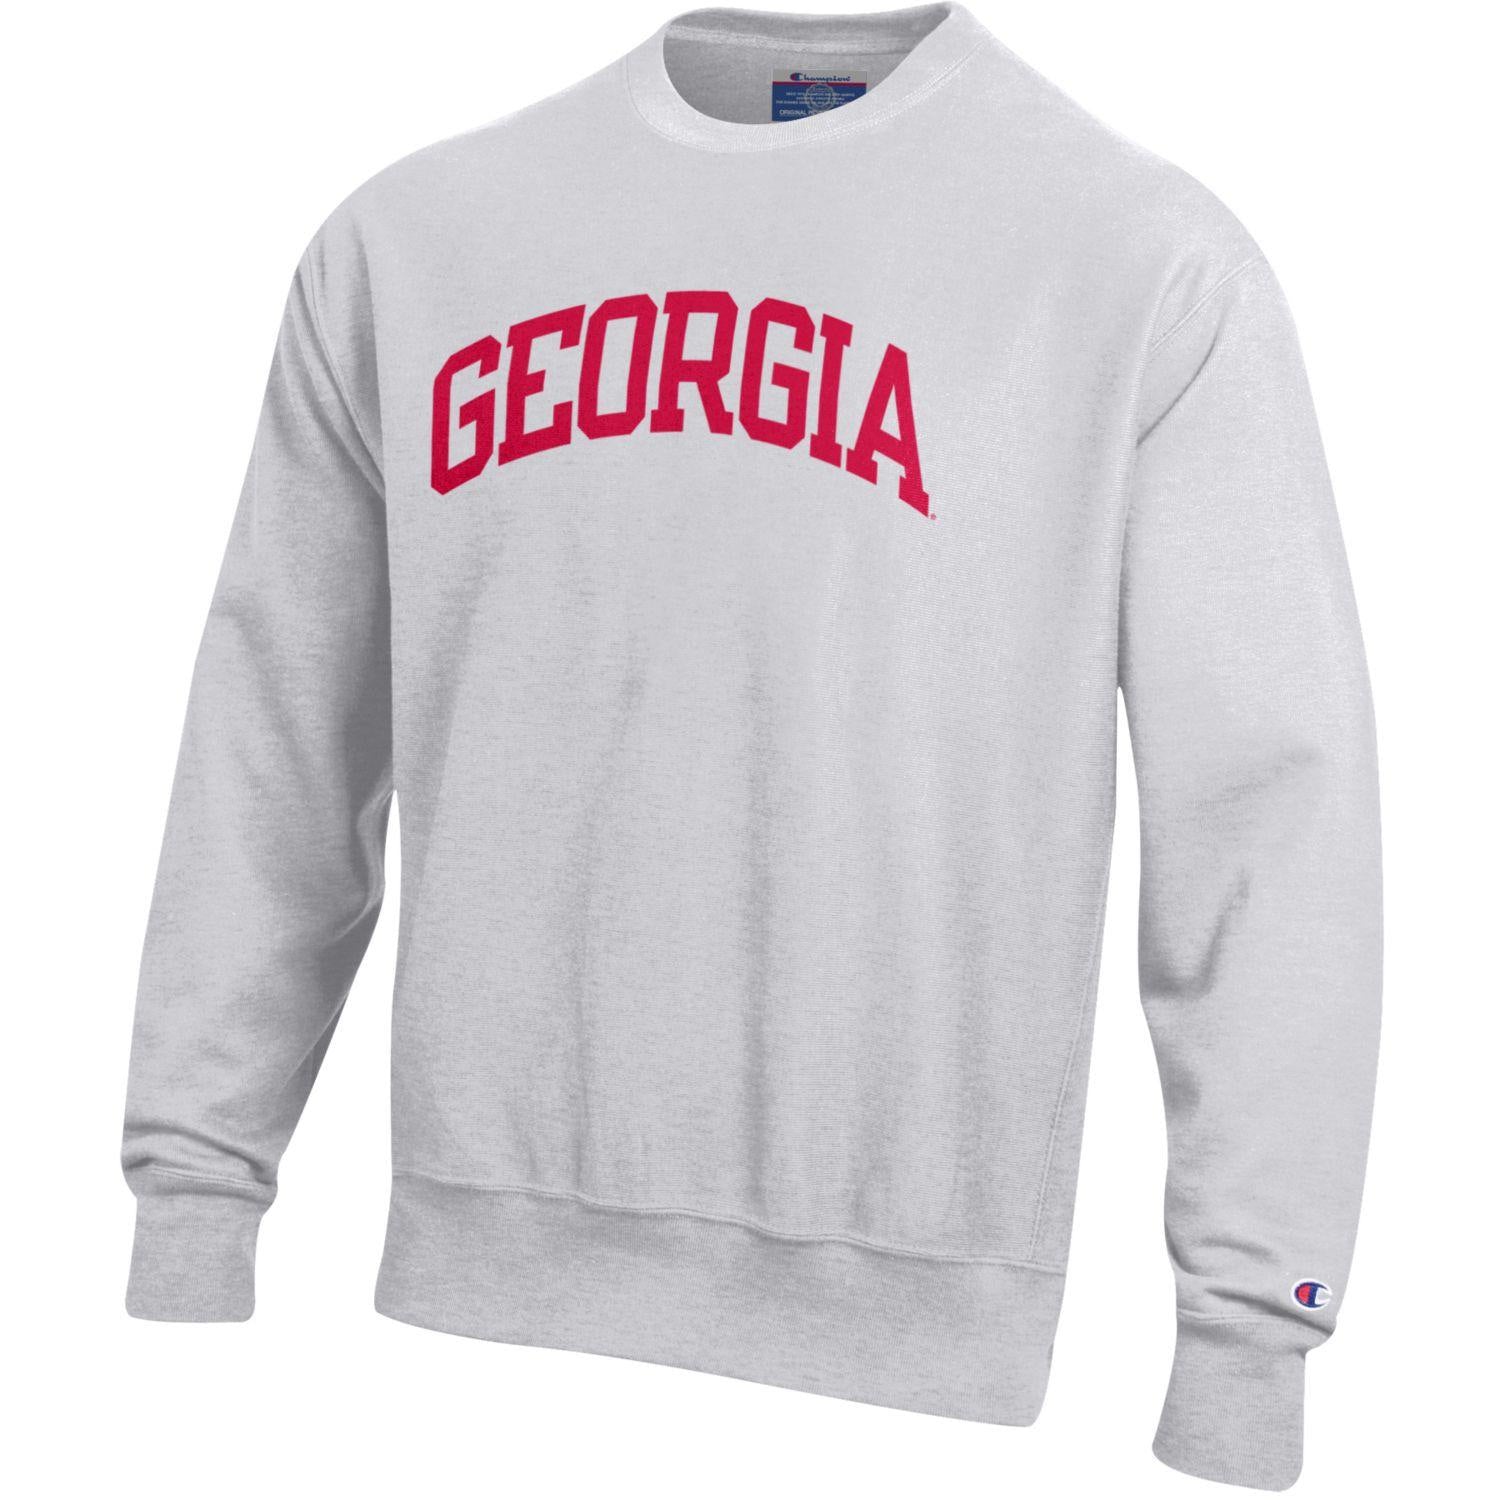 georgia bulldogs sweater